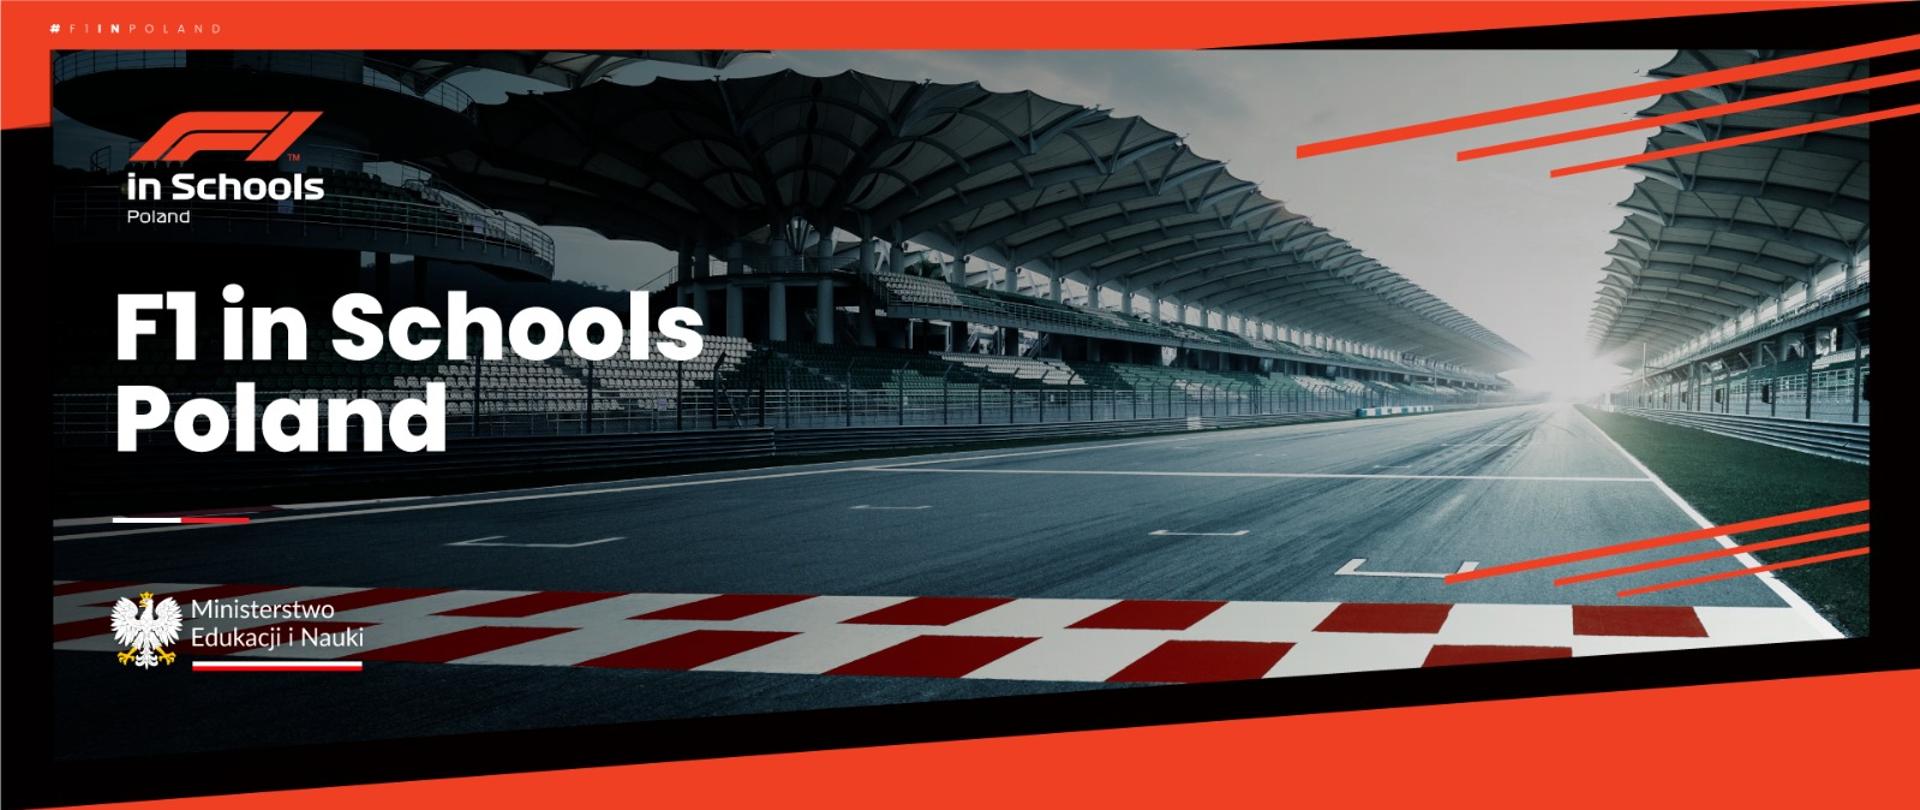 Widok toru wyścigowego i napis: F1 in Schools Poland